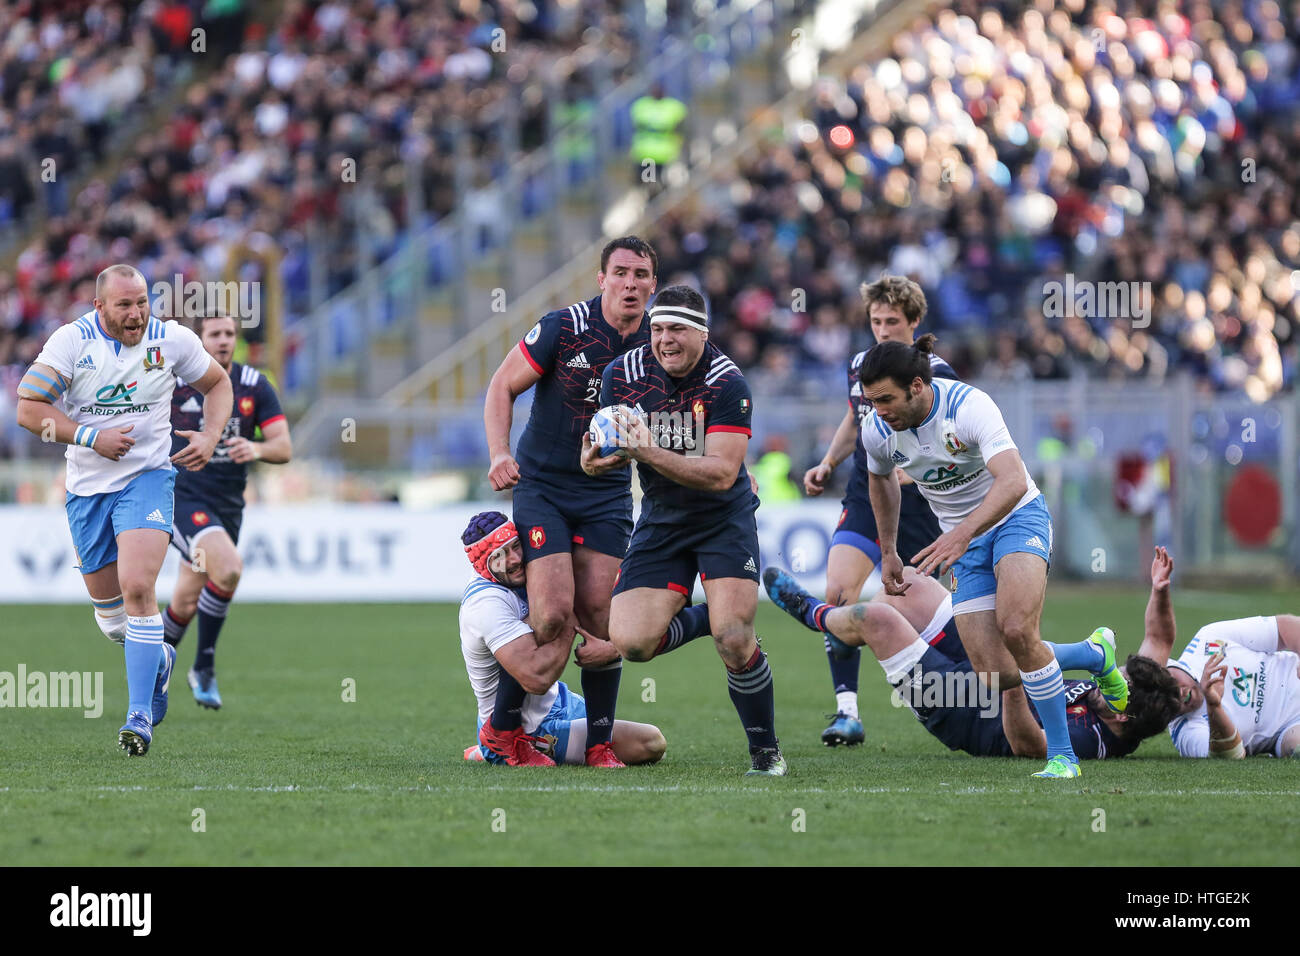 Rugby roma immagini e fotografie stock ad alta risoluzione - Alamy